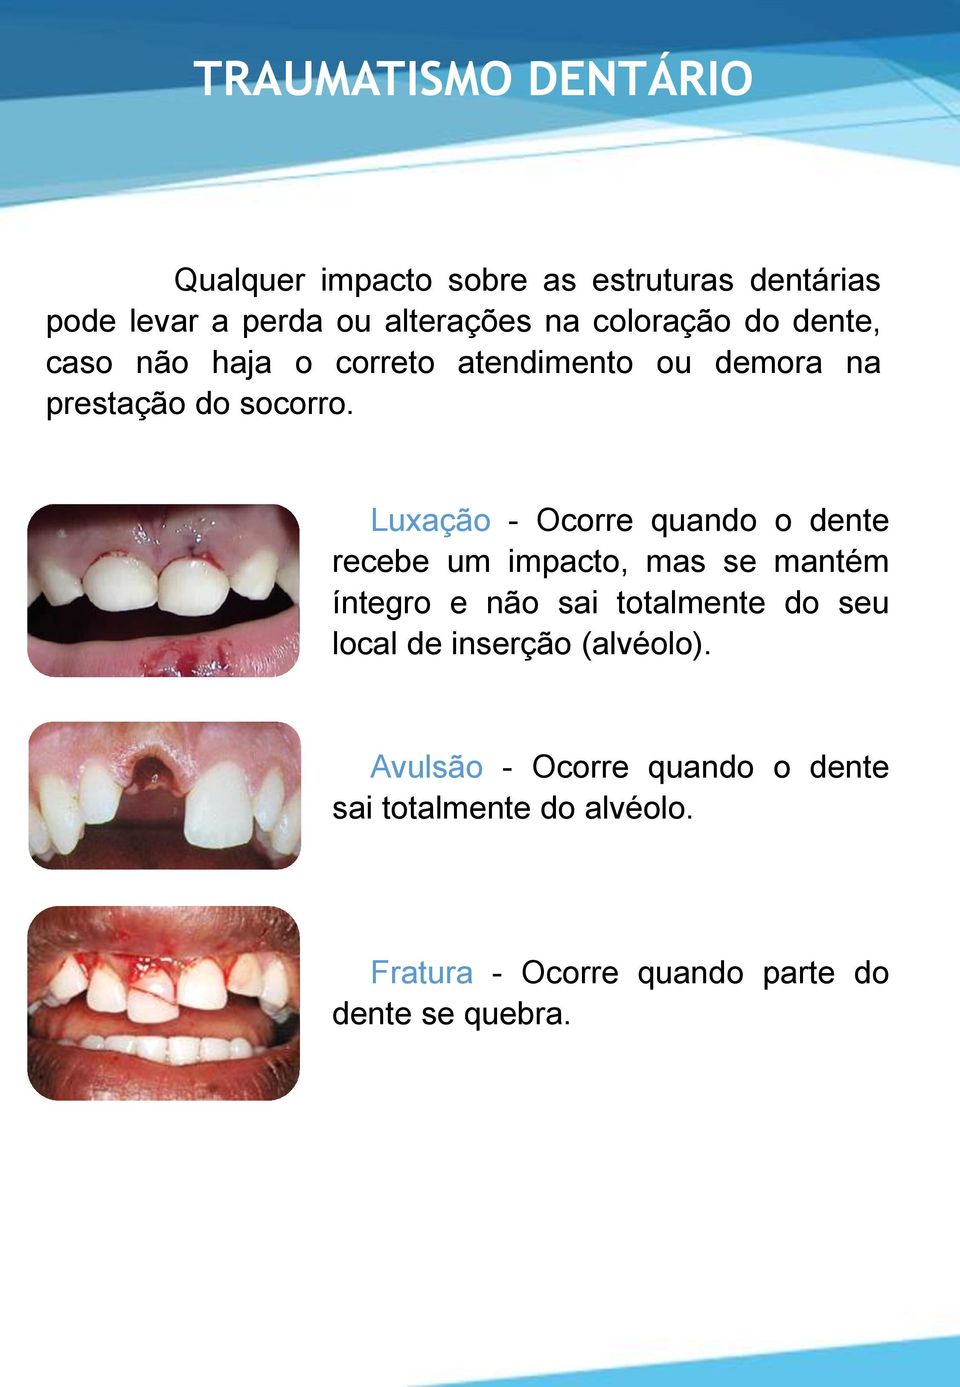 Luxação - Ocorre quando o dente recebe um impacto, mas se mantém íntegro e não sai totalmente do seu local